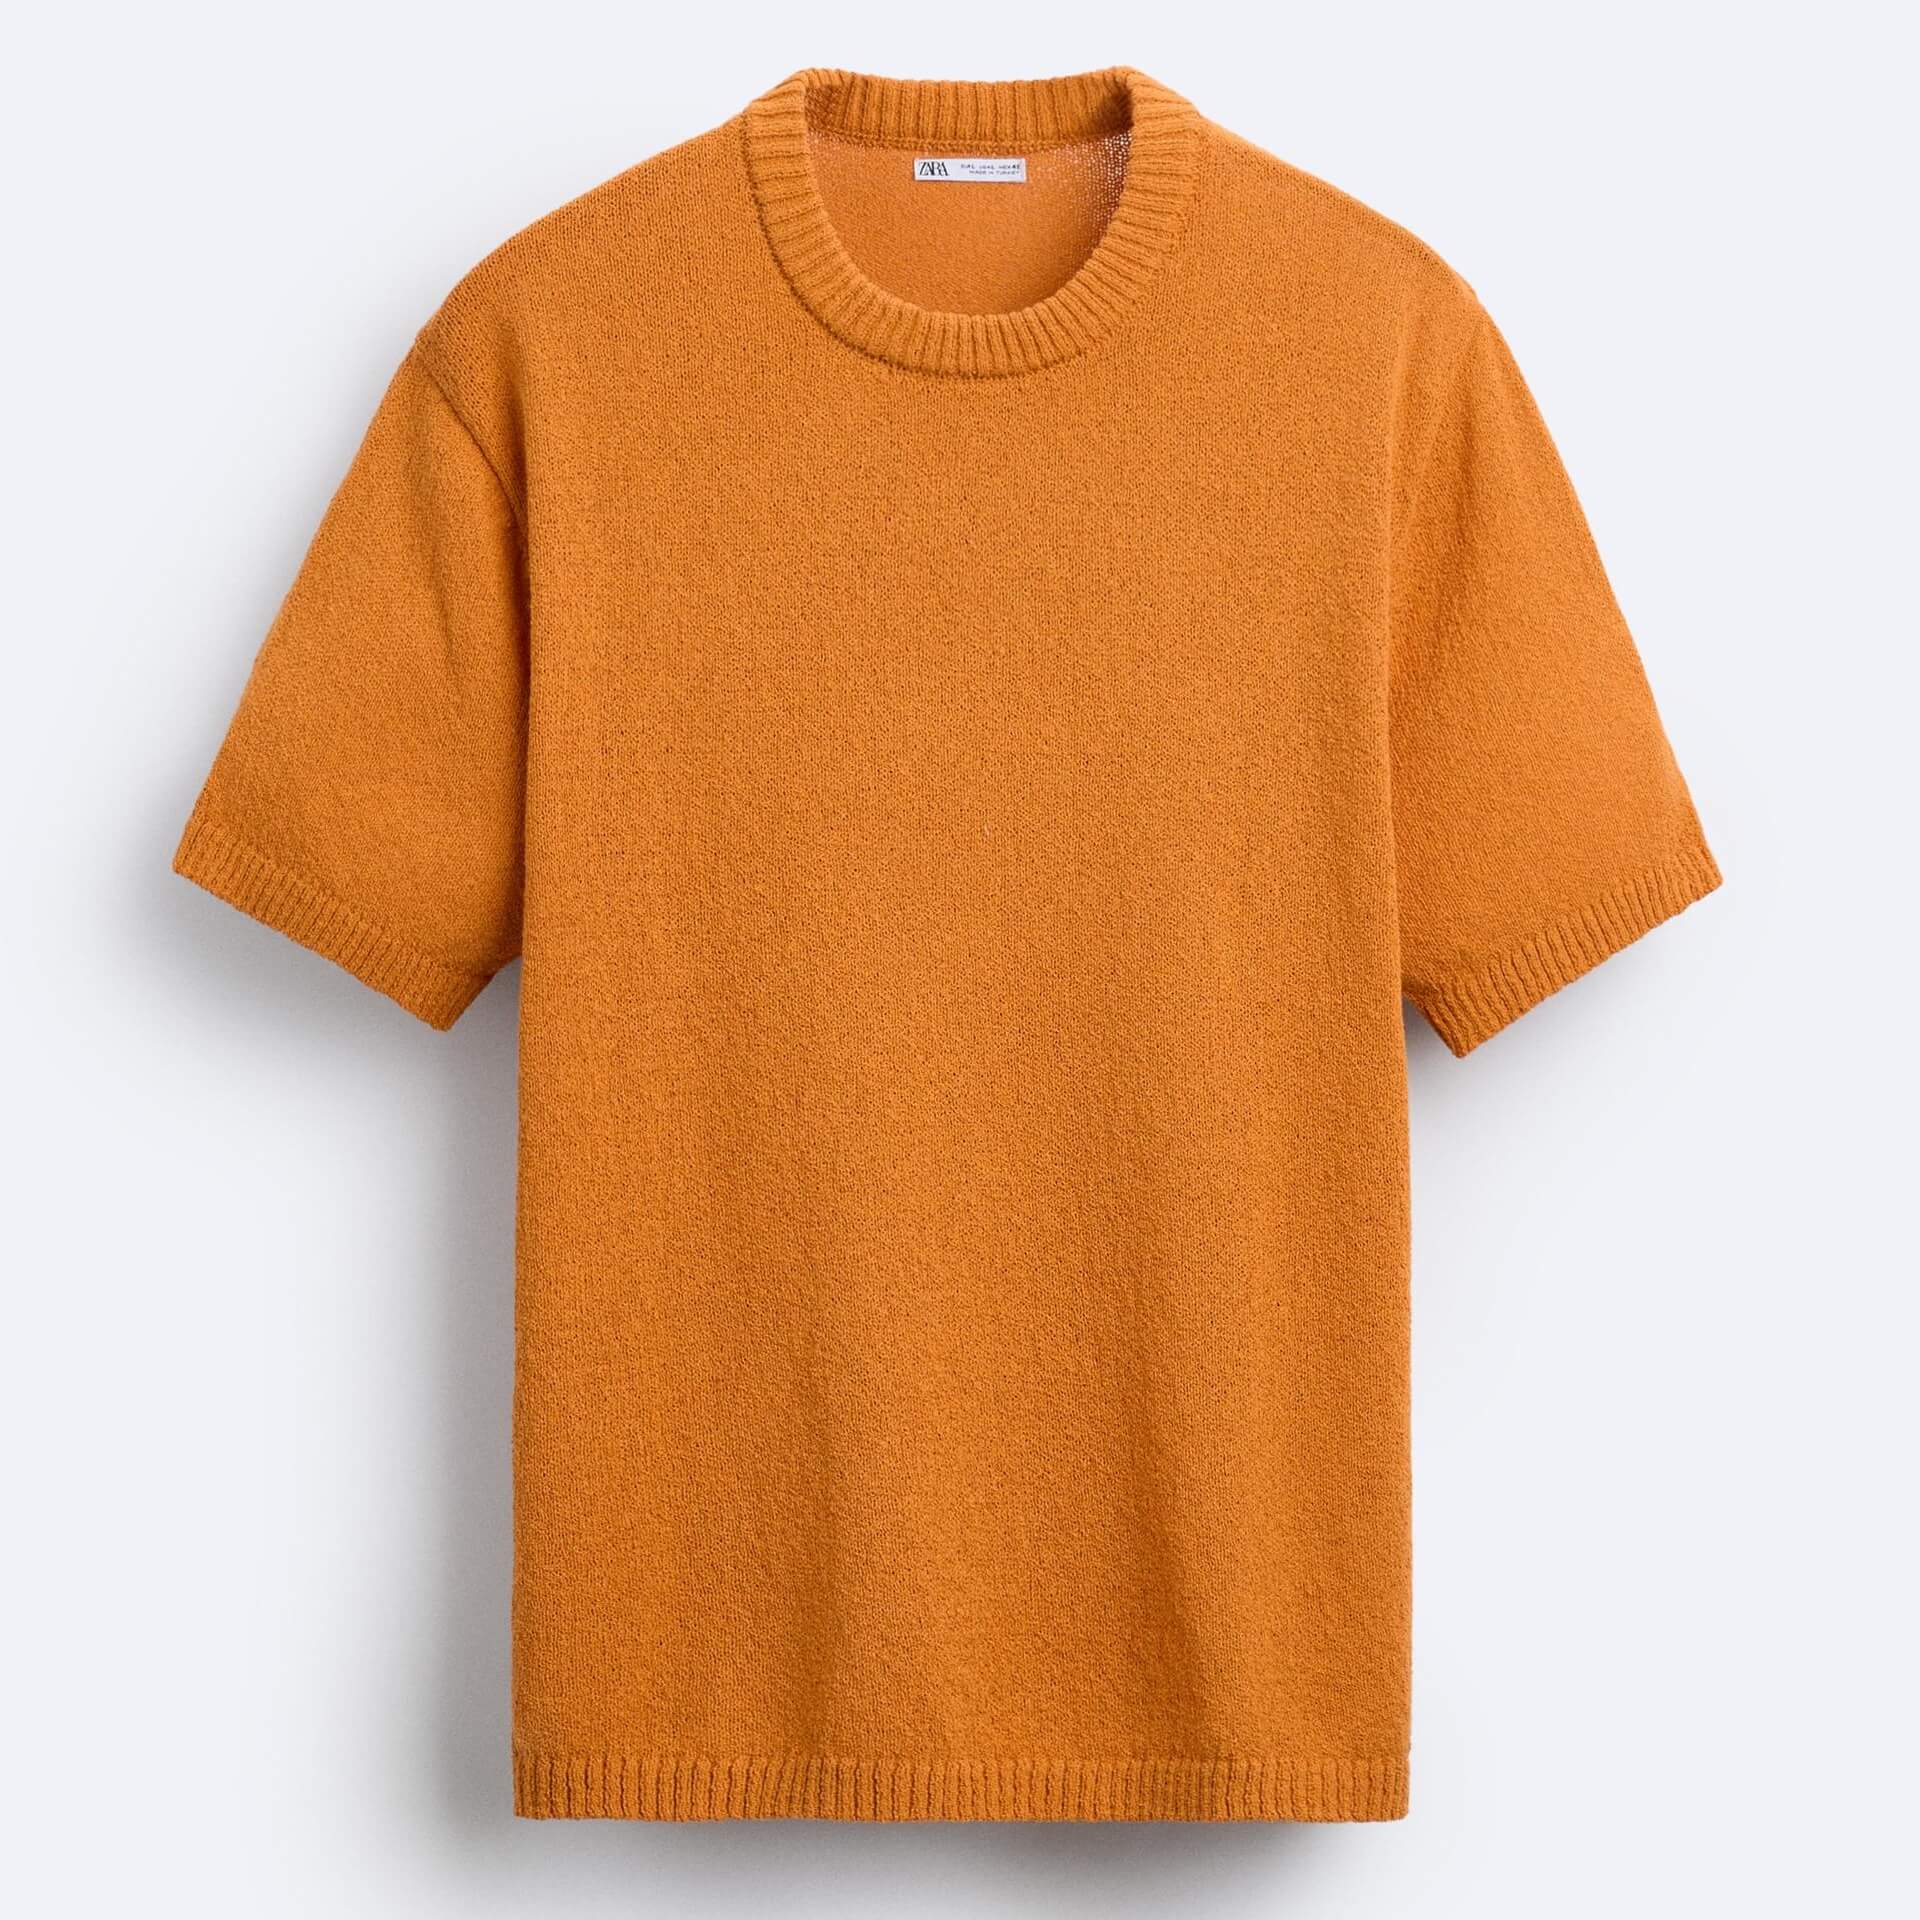 Футболка Zara Textured Knit, оранжевый футболка zara textured knit серый